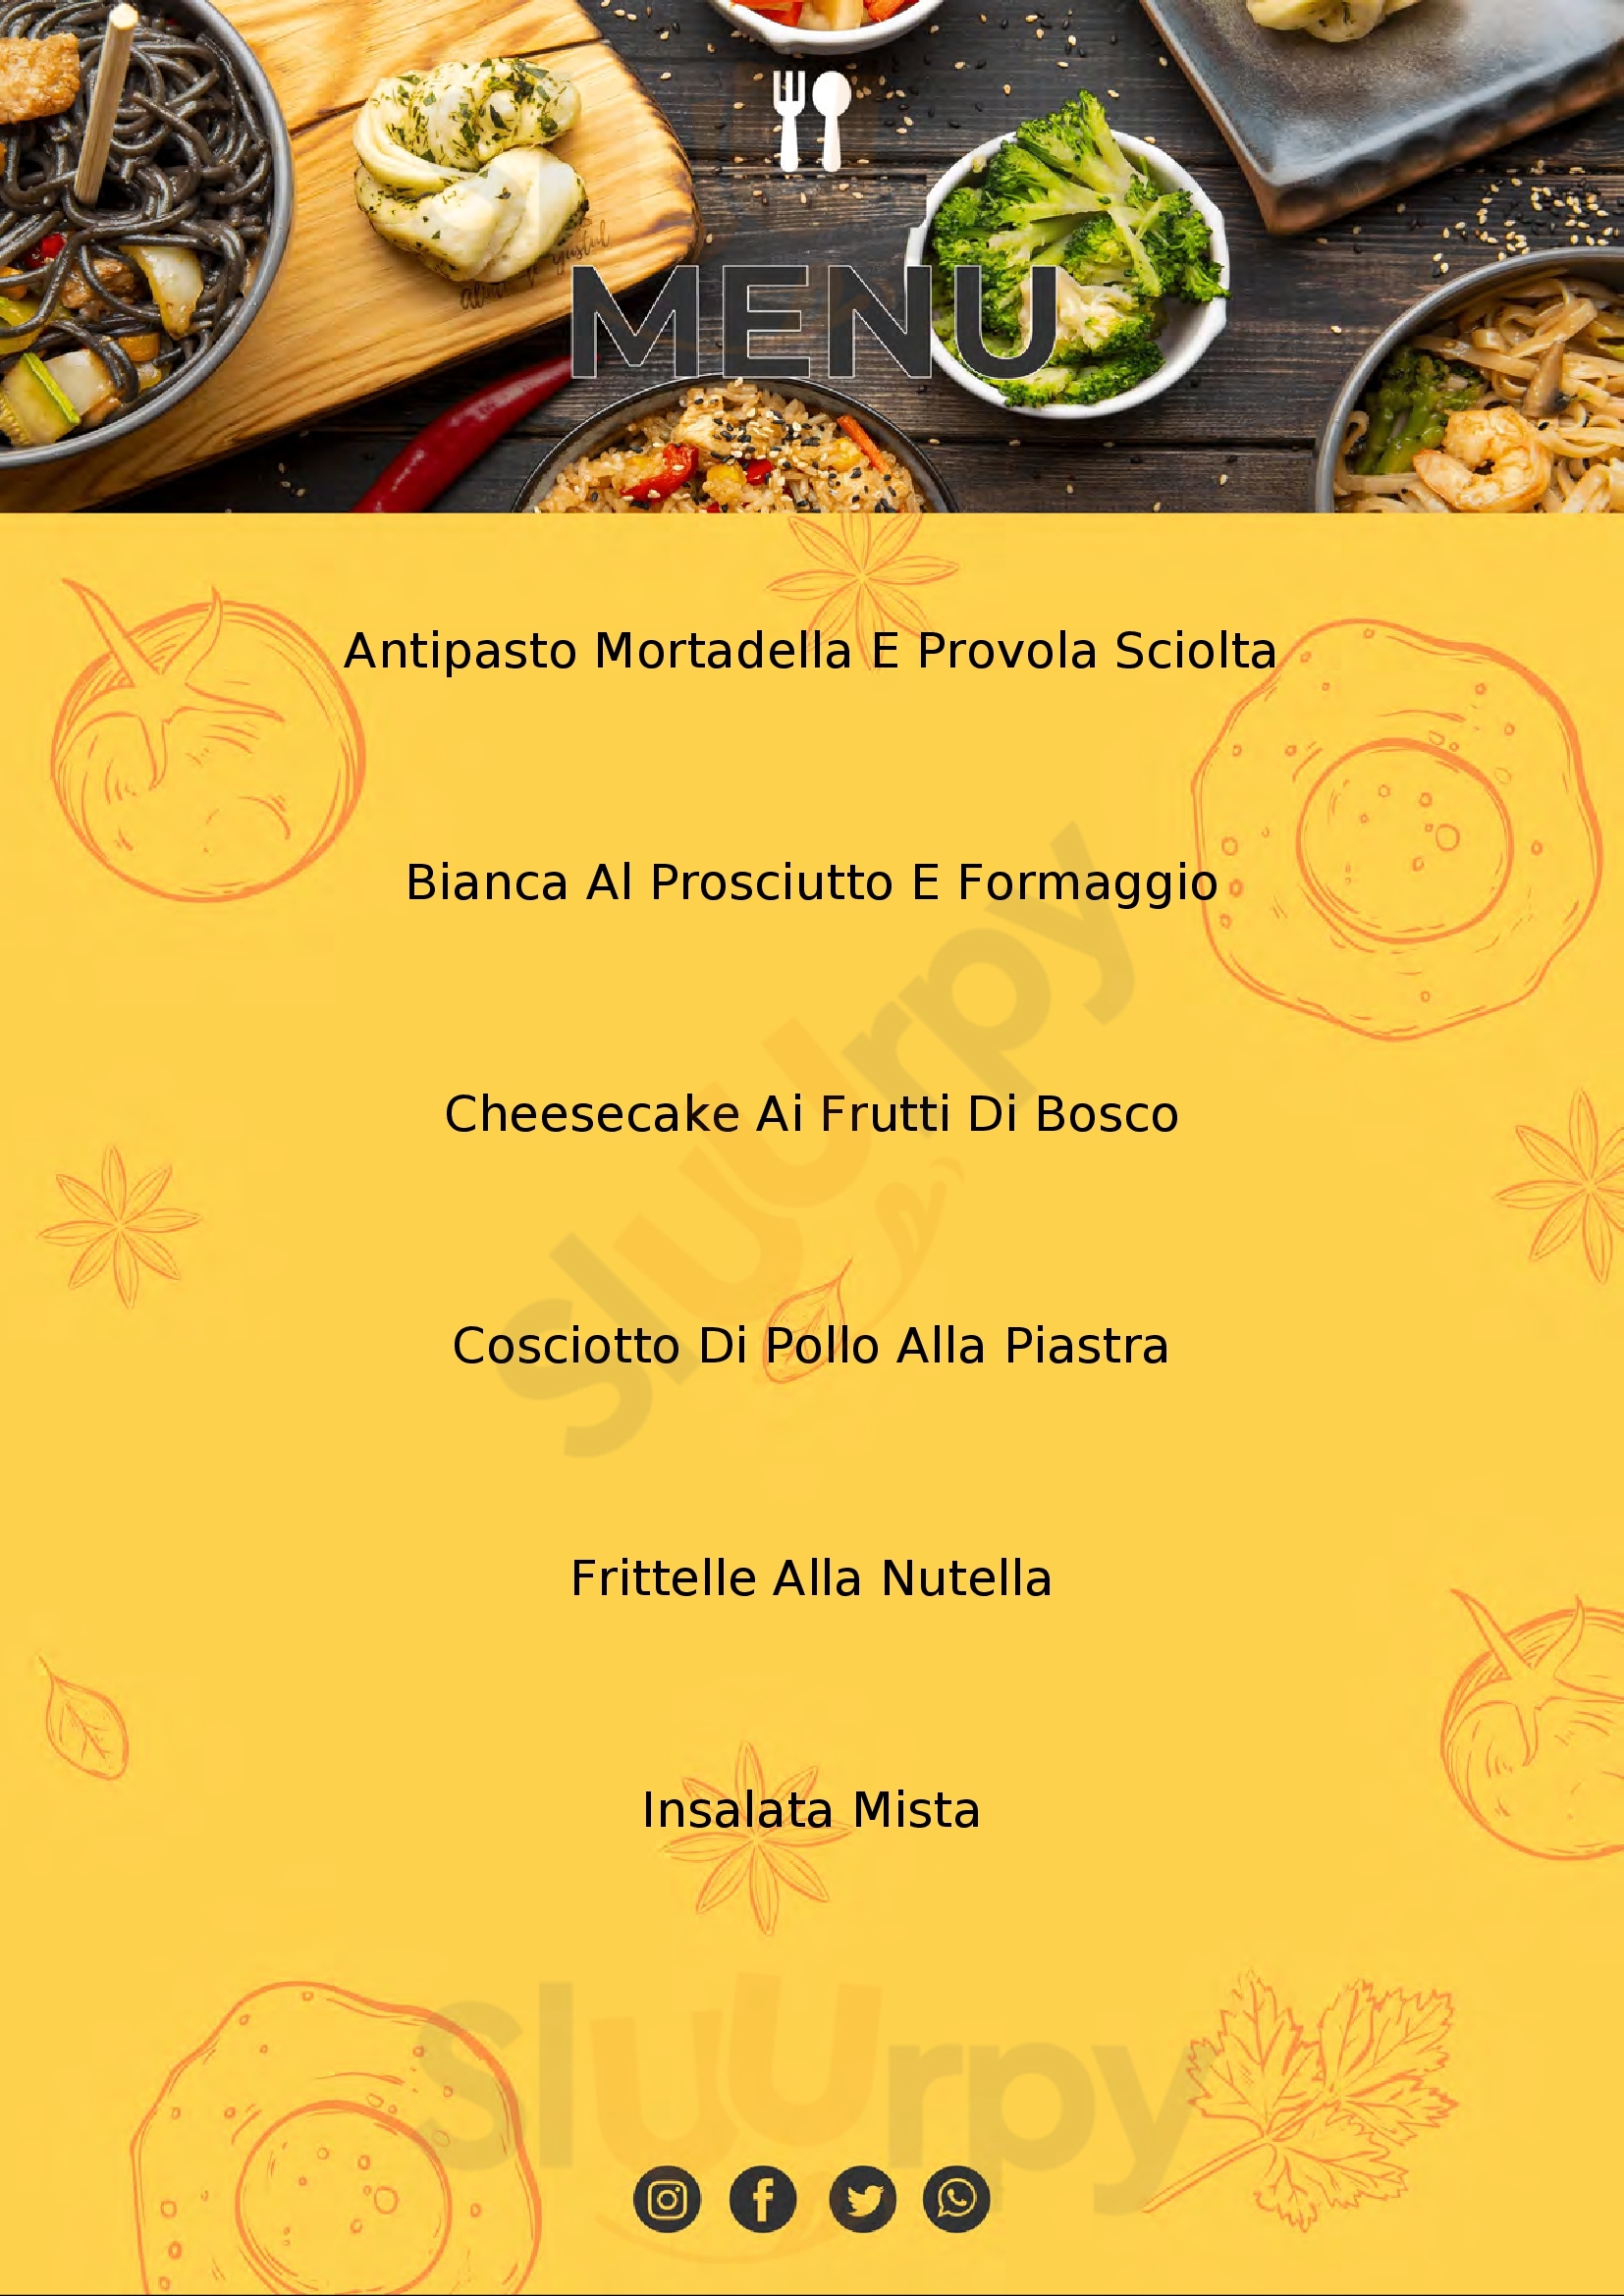 Rosato Pizza & Cucina Montecorvino Rovella menù 1 pagina